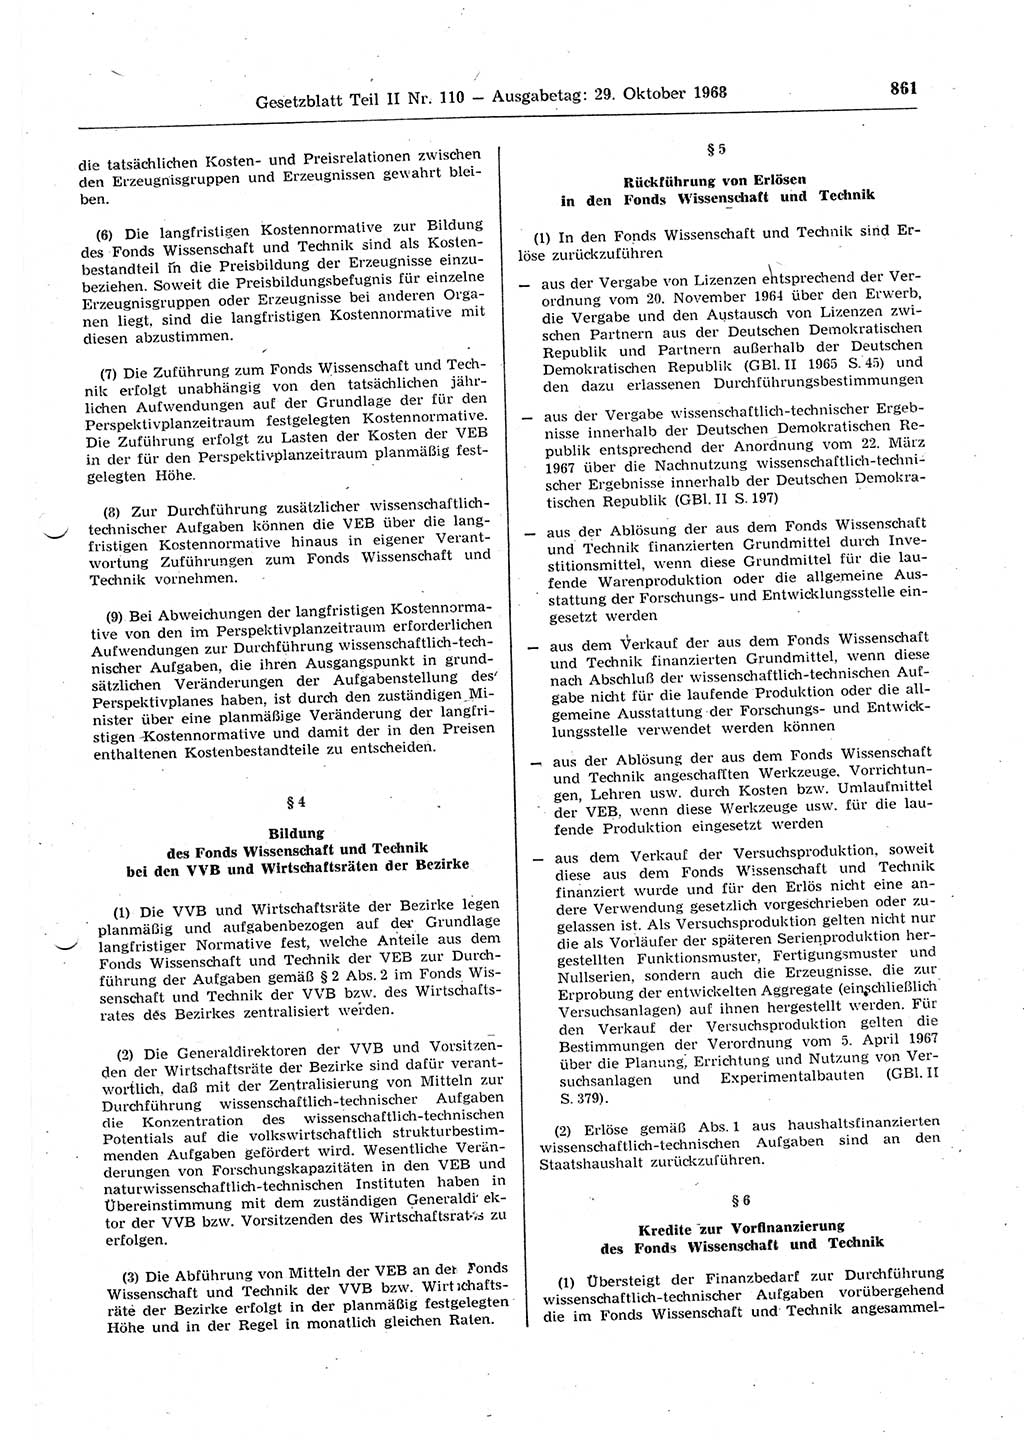 Gesetzblatt (GBl.) der Deutschen Demokratischen Republik (DDR) Teil ⅠⅠ 1968, Seite 861 (GBl. DDR ⅠⅠ 1968, S. 861)